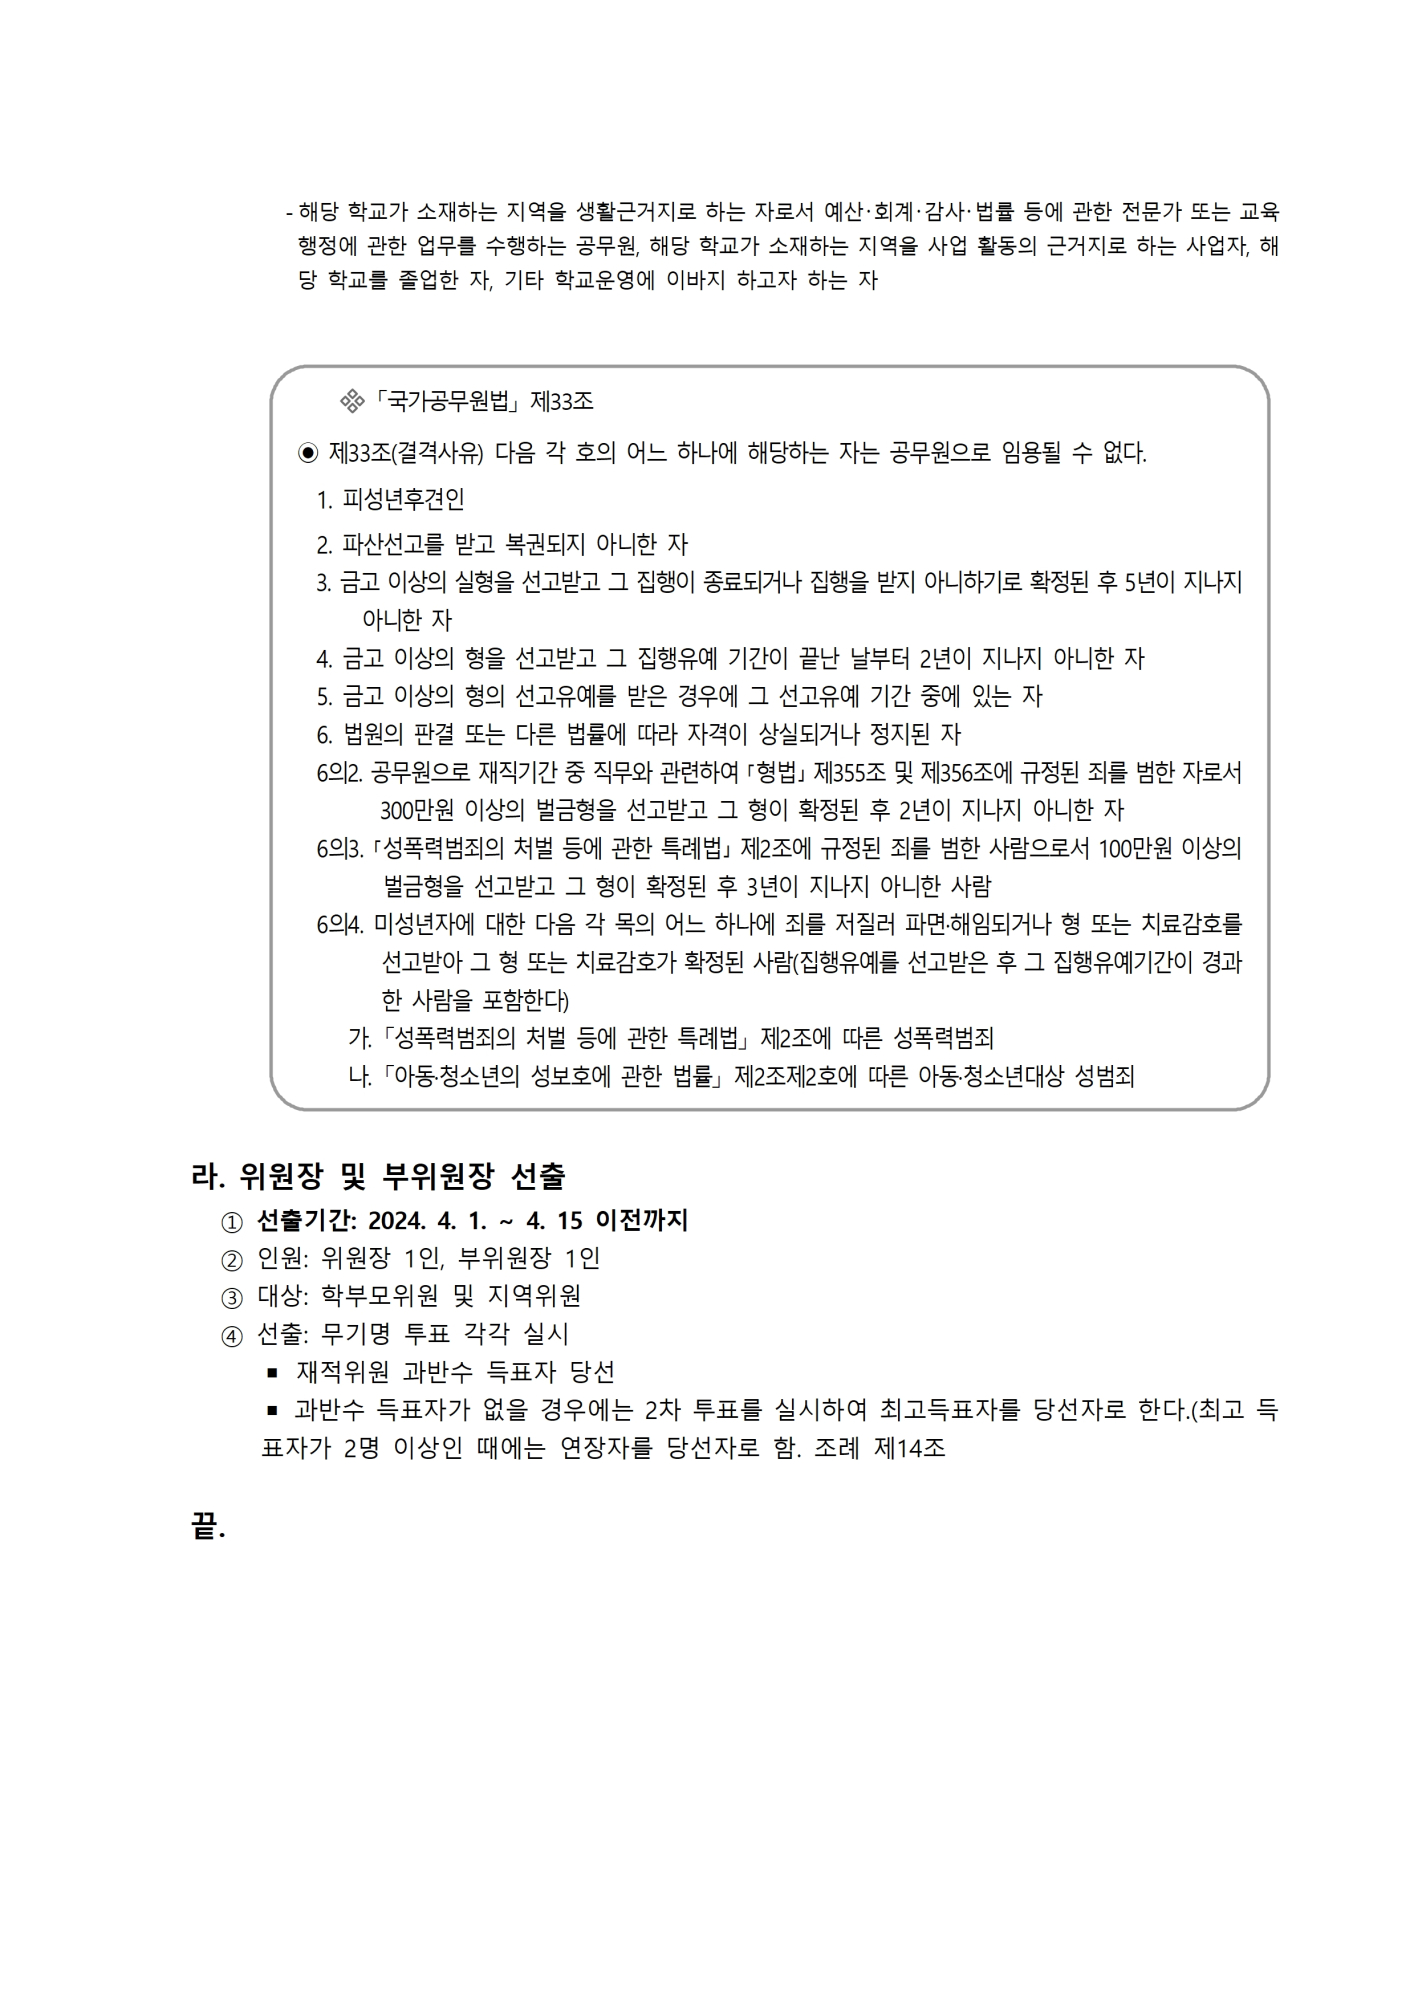 01-01-붙임) 학교운영위원회 구성 계획005